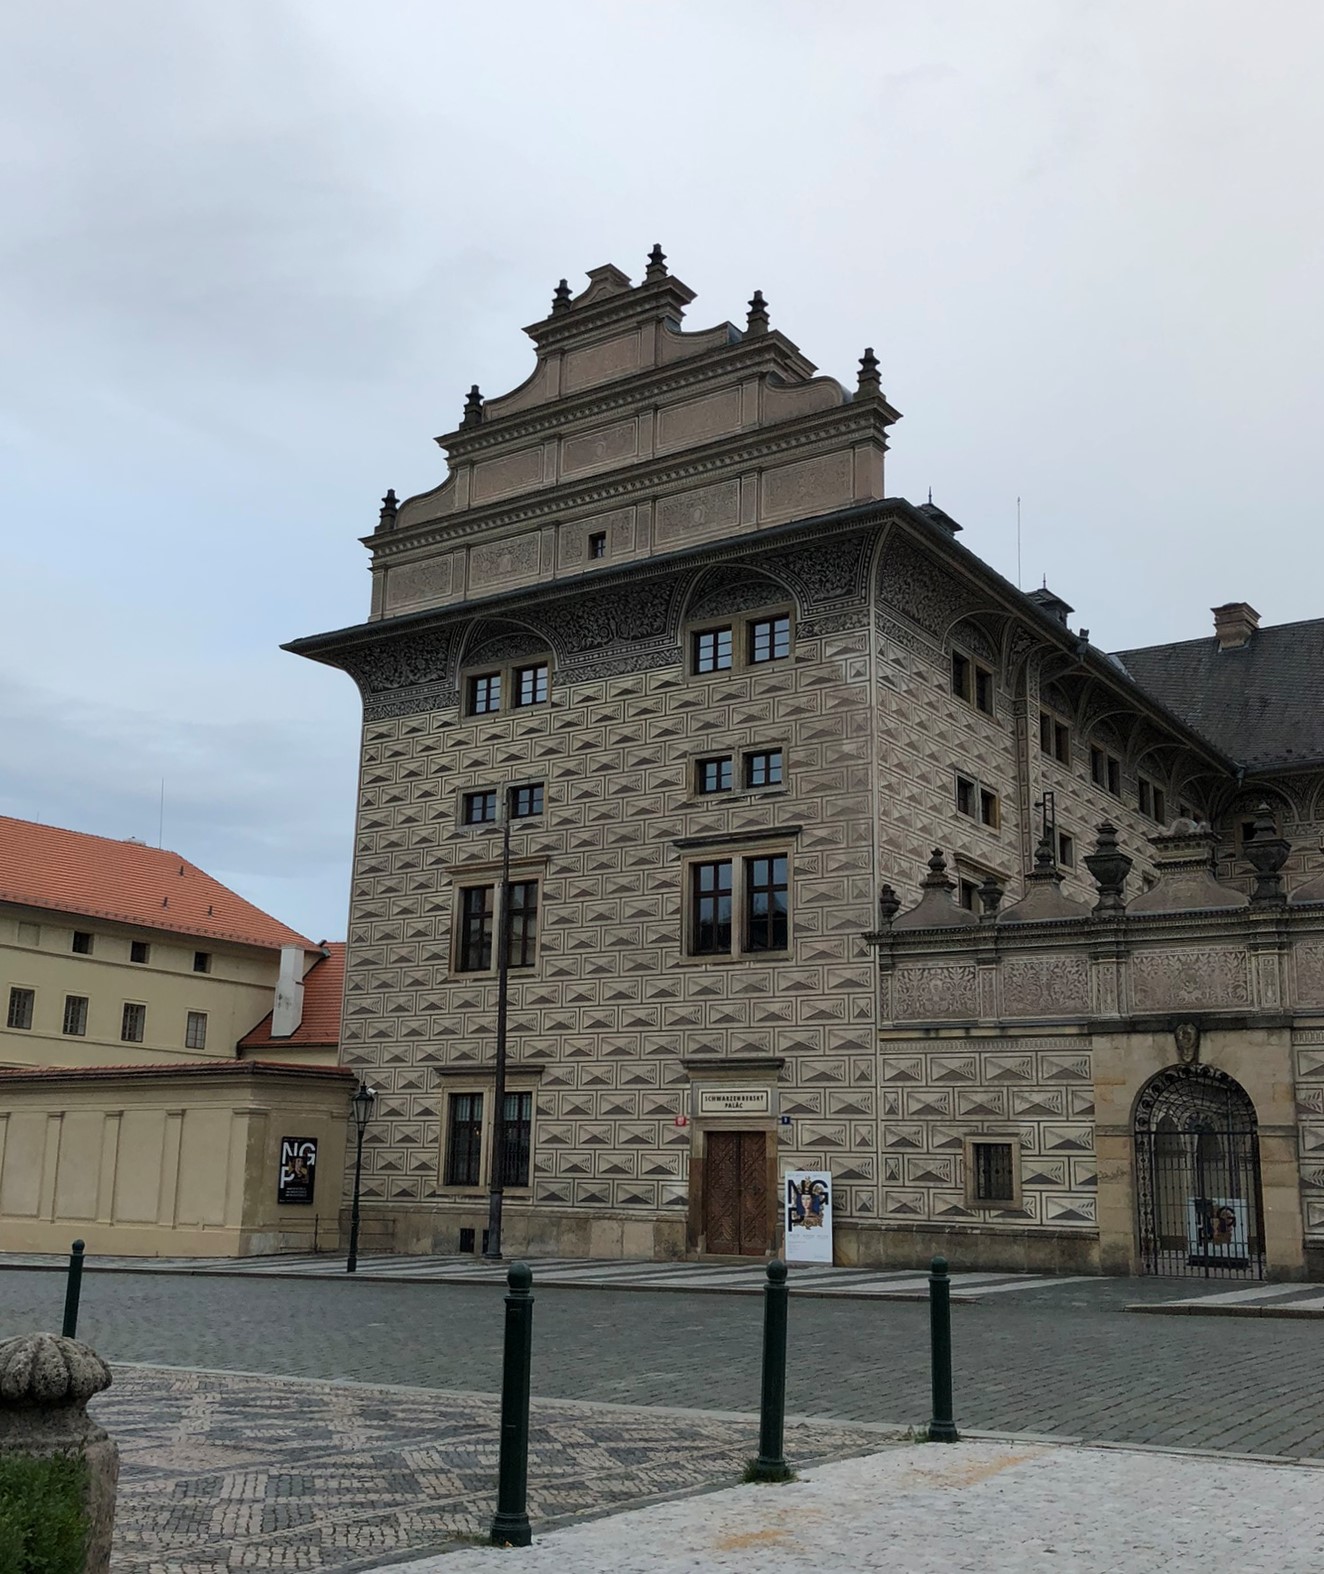 Das Schwarzenberg Palais auf dem Hradschiner Platz vor dem Tor der Prager Burg